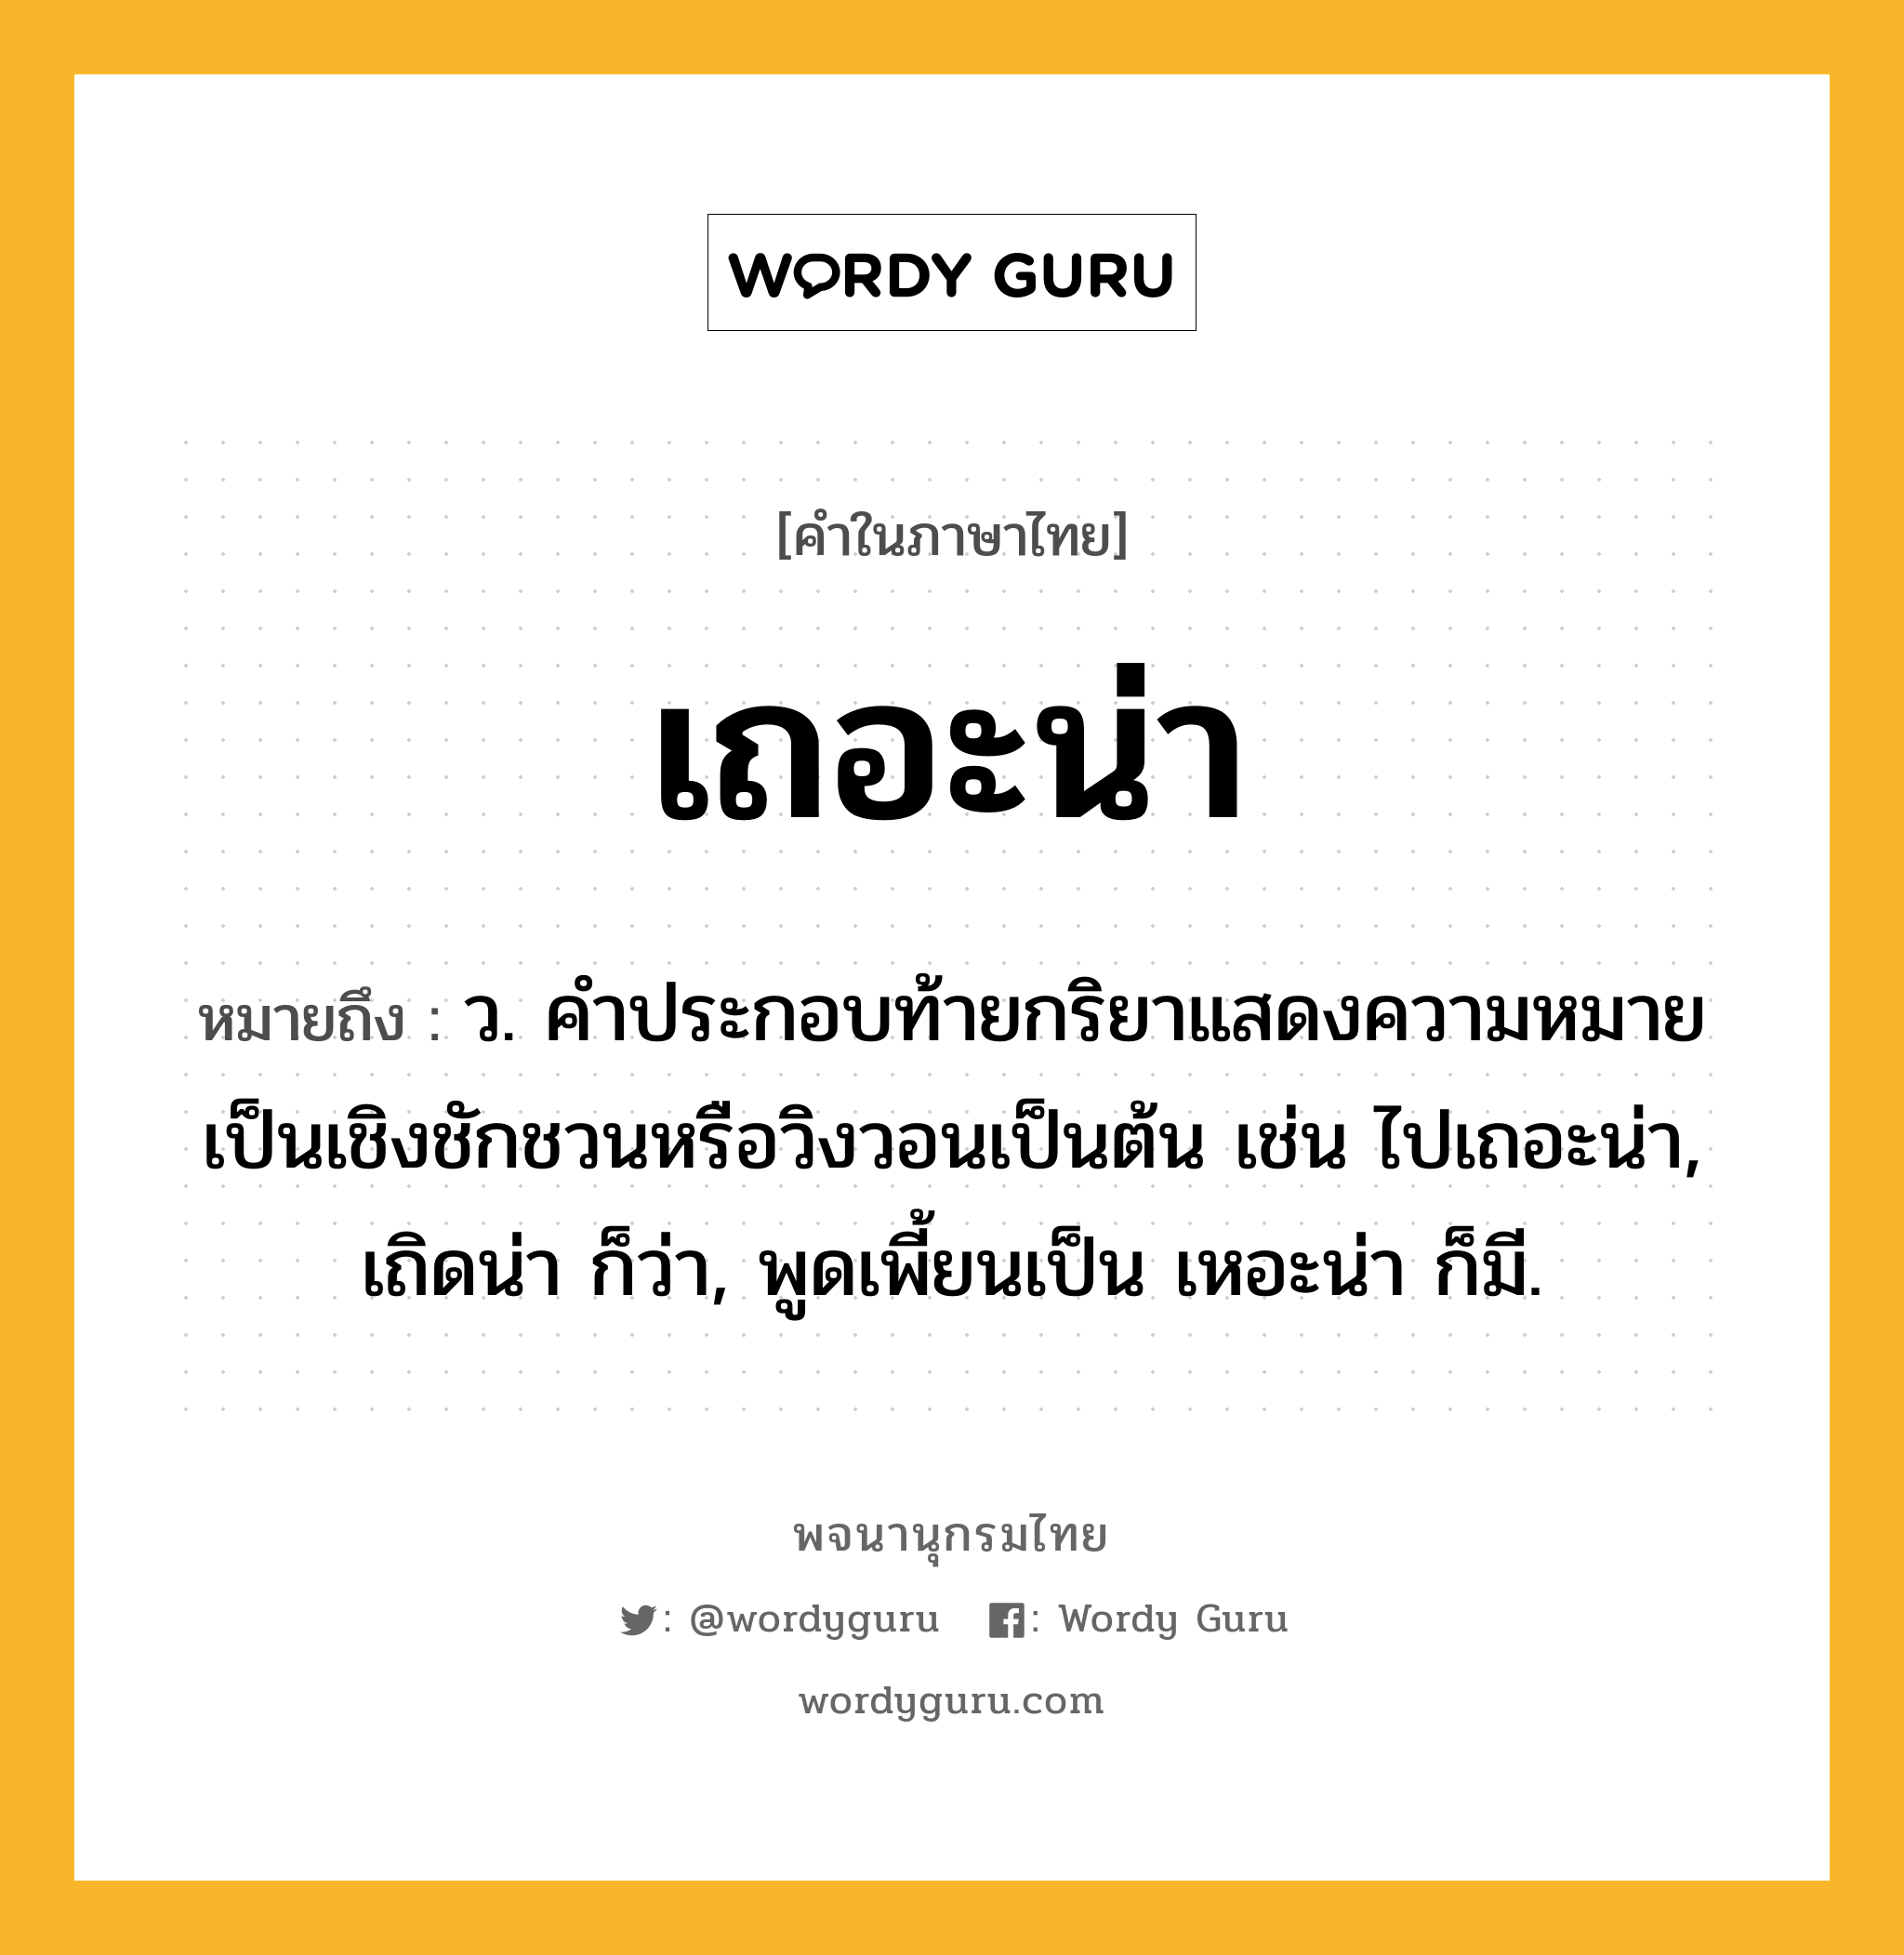 เถอะน่า ความหมาย หมายถึงอะไร?, คำในภาษาไทย เถอะน่า หมายถึง ว. คําประกอบท้ายกริยาแสดงความหมายเป็นเชิงชักชวนหรือวิงวอนเป็นต้น เช่น ไปเถอะน่า, เถิดน่า ก็ว่า, พูดเพี้ยนเป็น เหอะน่า ก็มี.